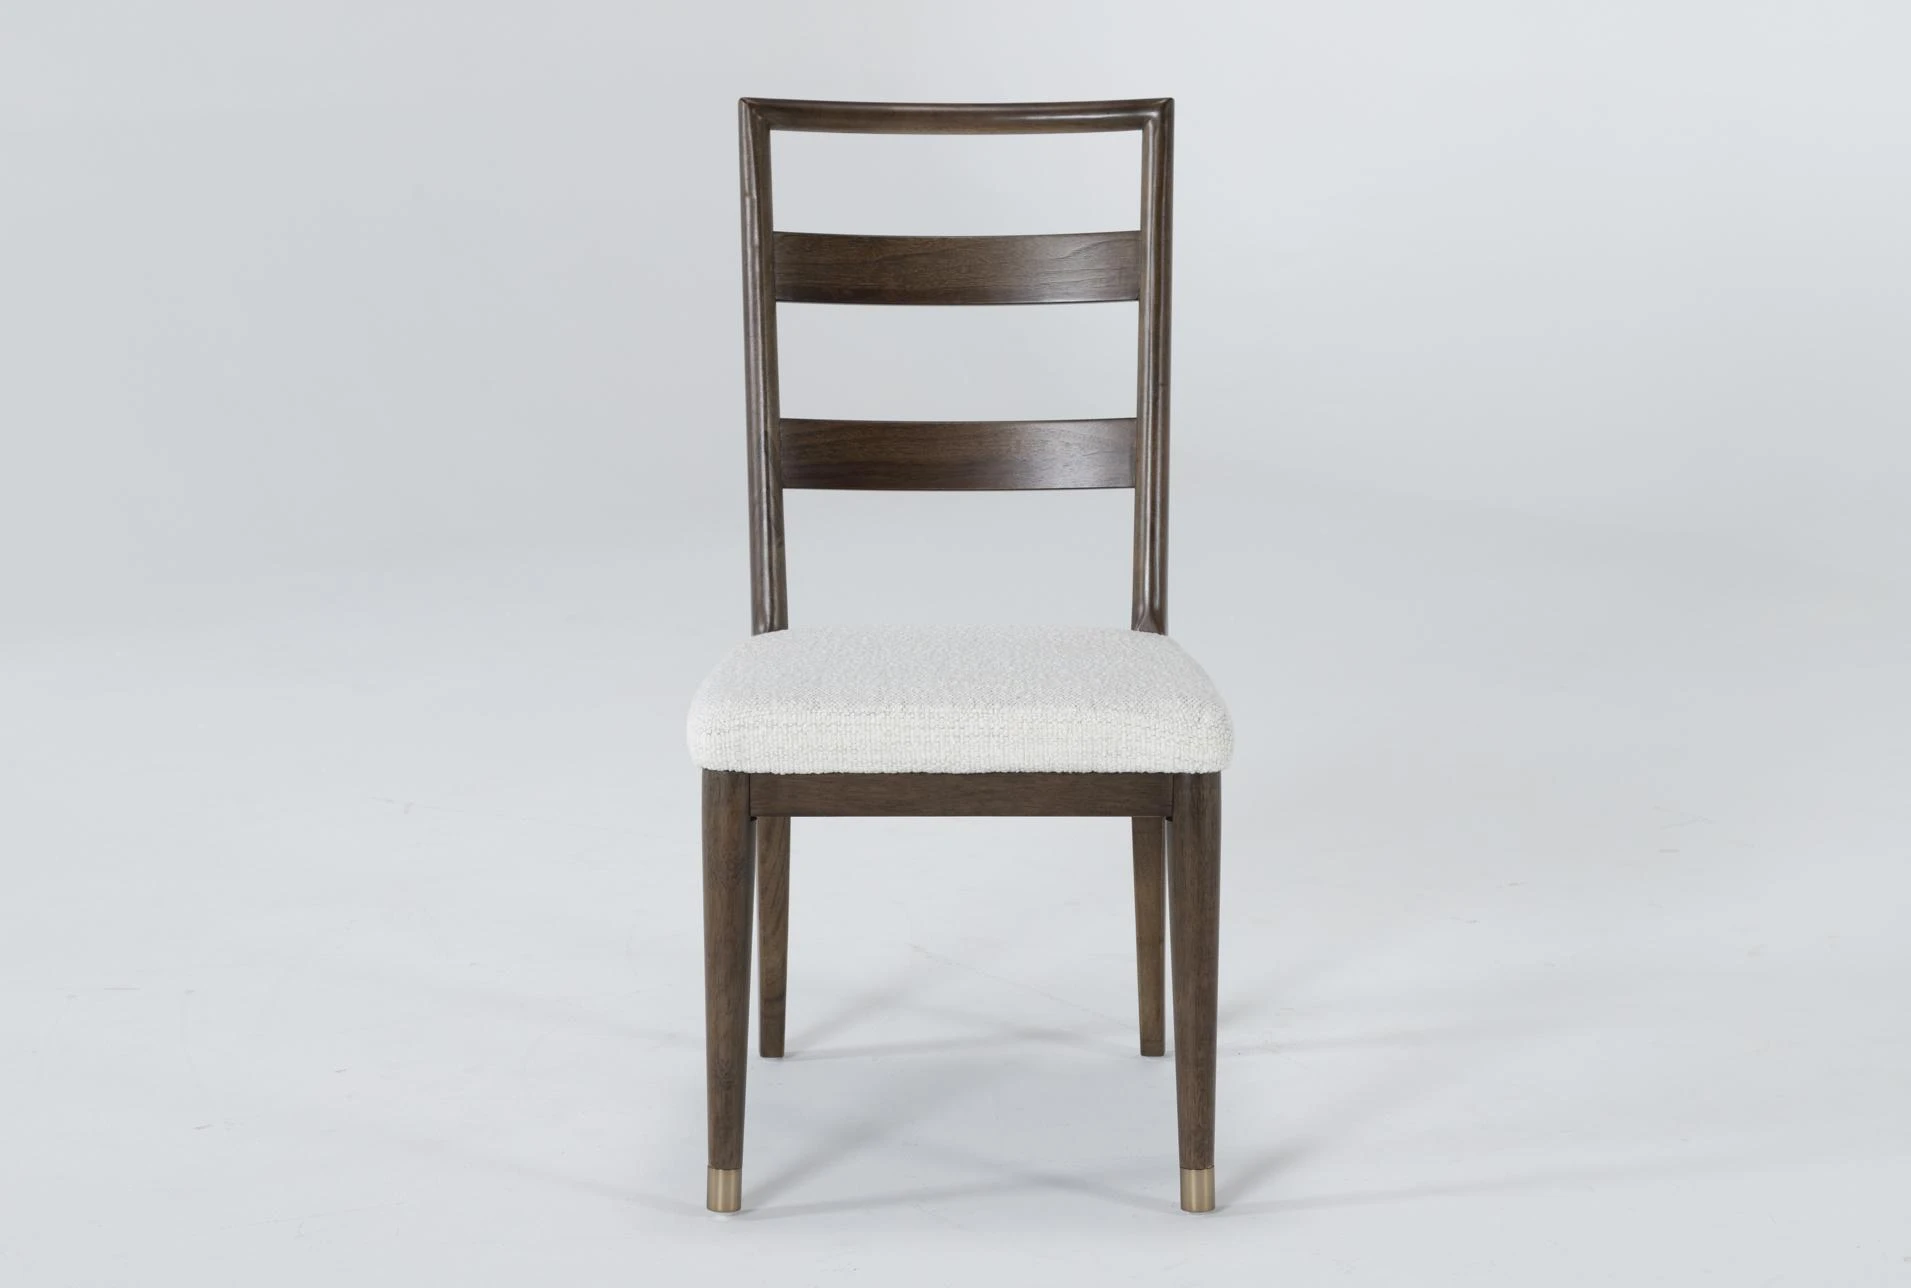 French Midcentury Blackened Iron Dining Chairs, Set of 7 – Nate Berkus